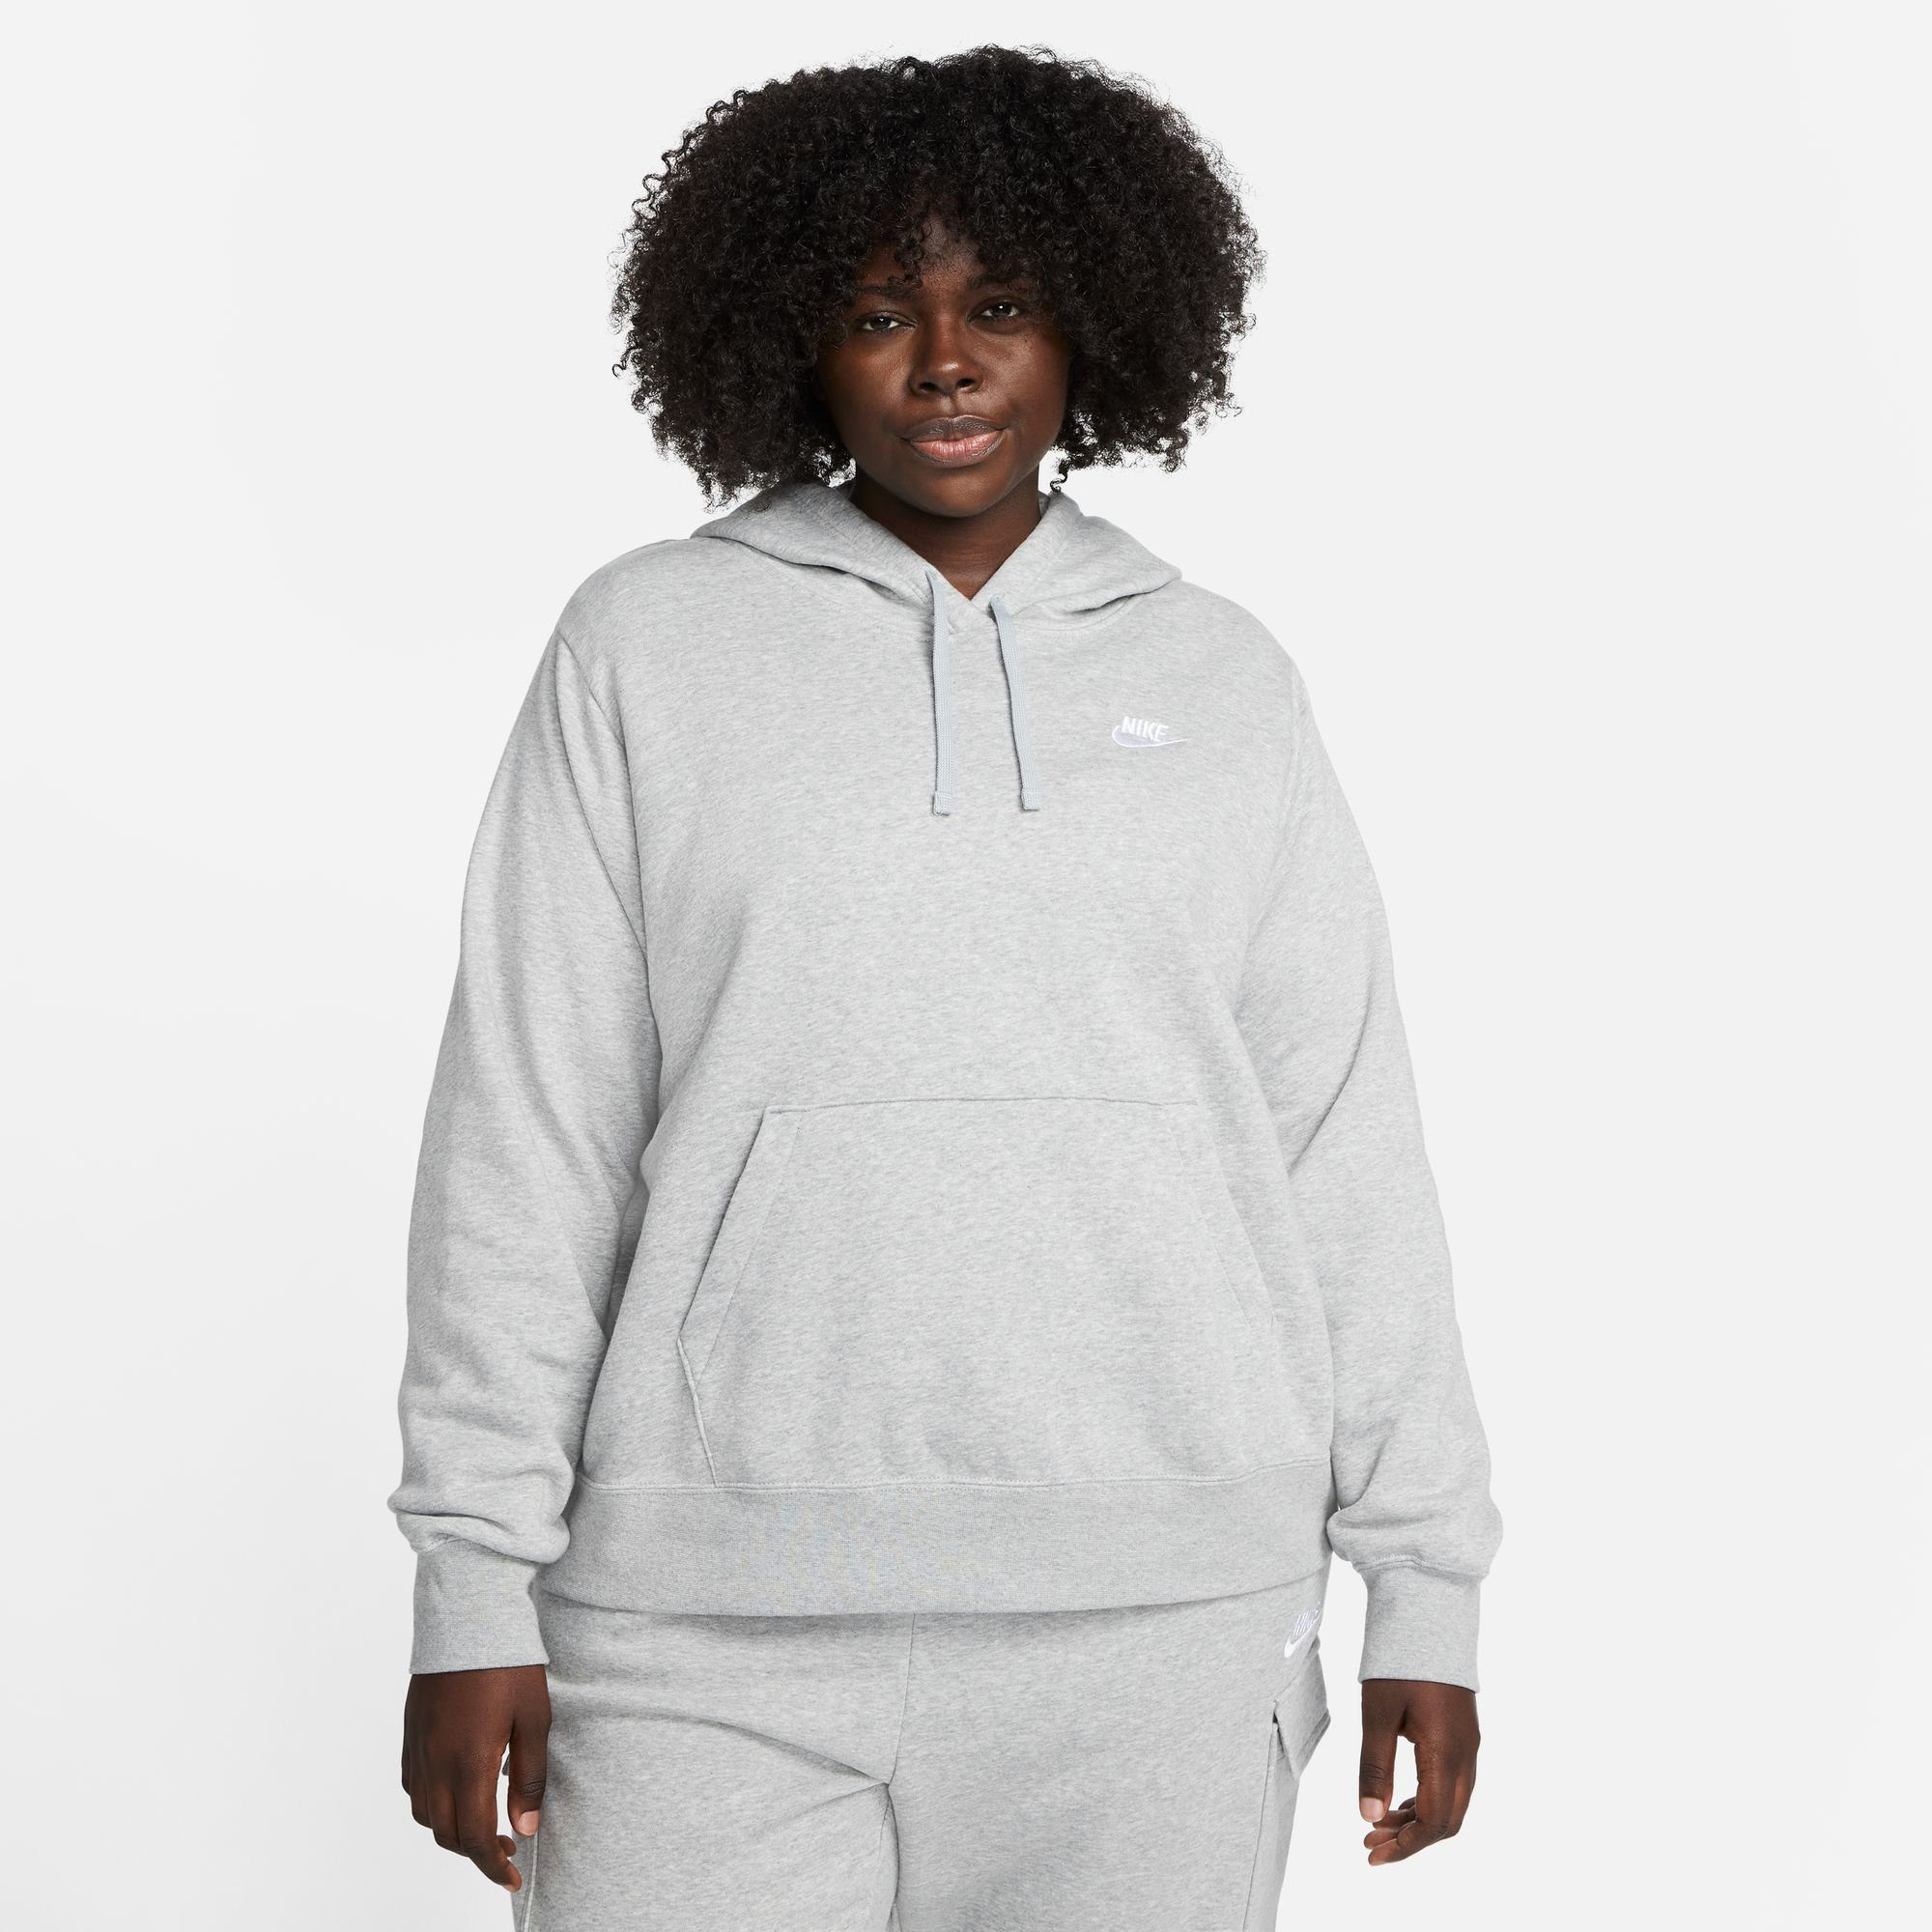 HOODIE Kapuzensweatshirt (PLUS WOMEN'S SIZE) Nike FLEECE GREY DK Sportswear PULLOVER HEATHER/WHITE CLUB